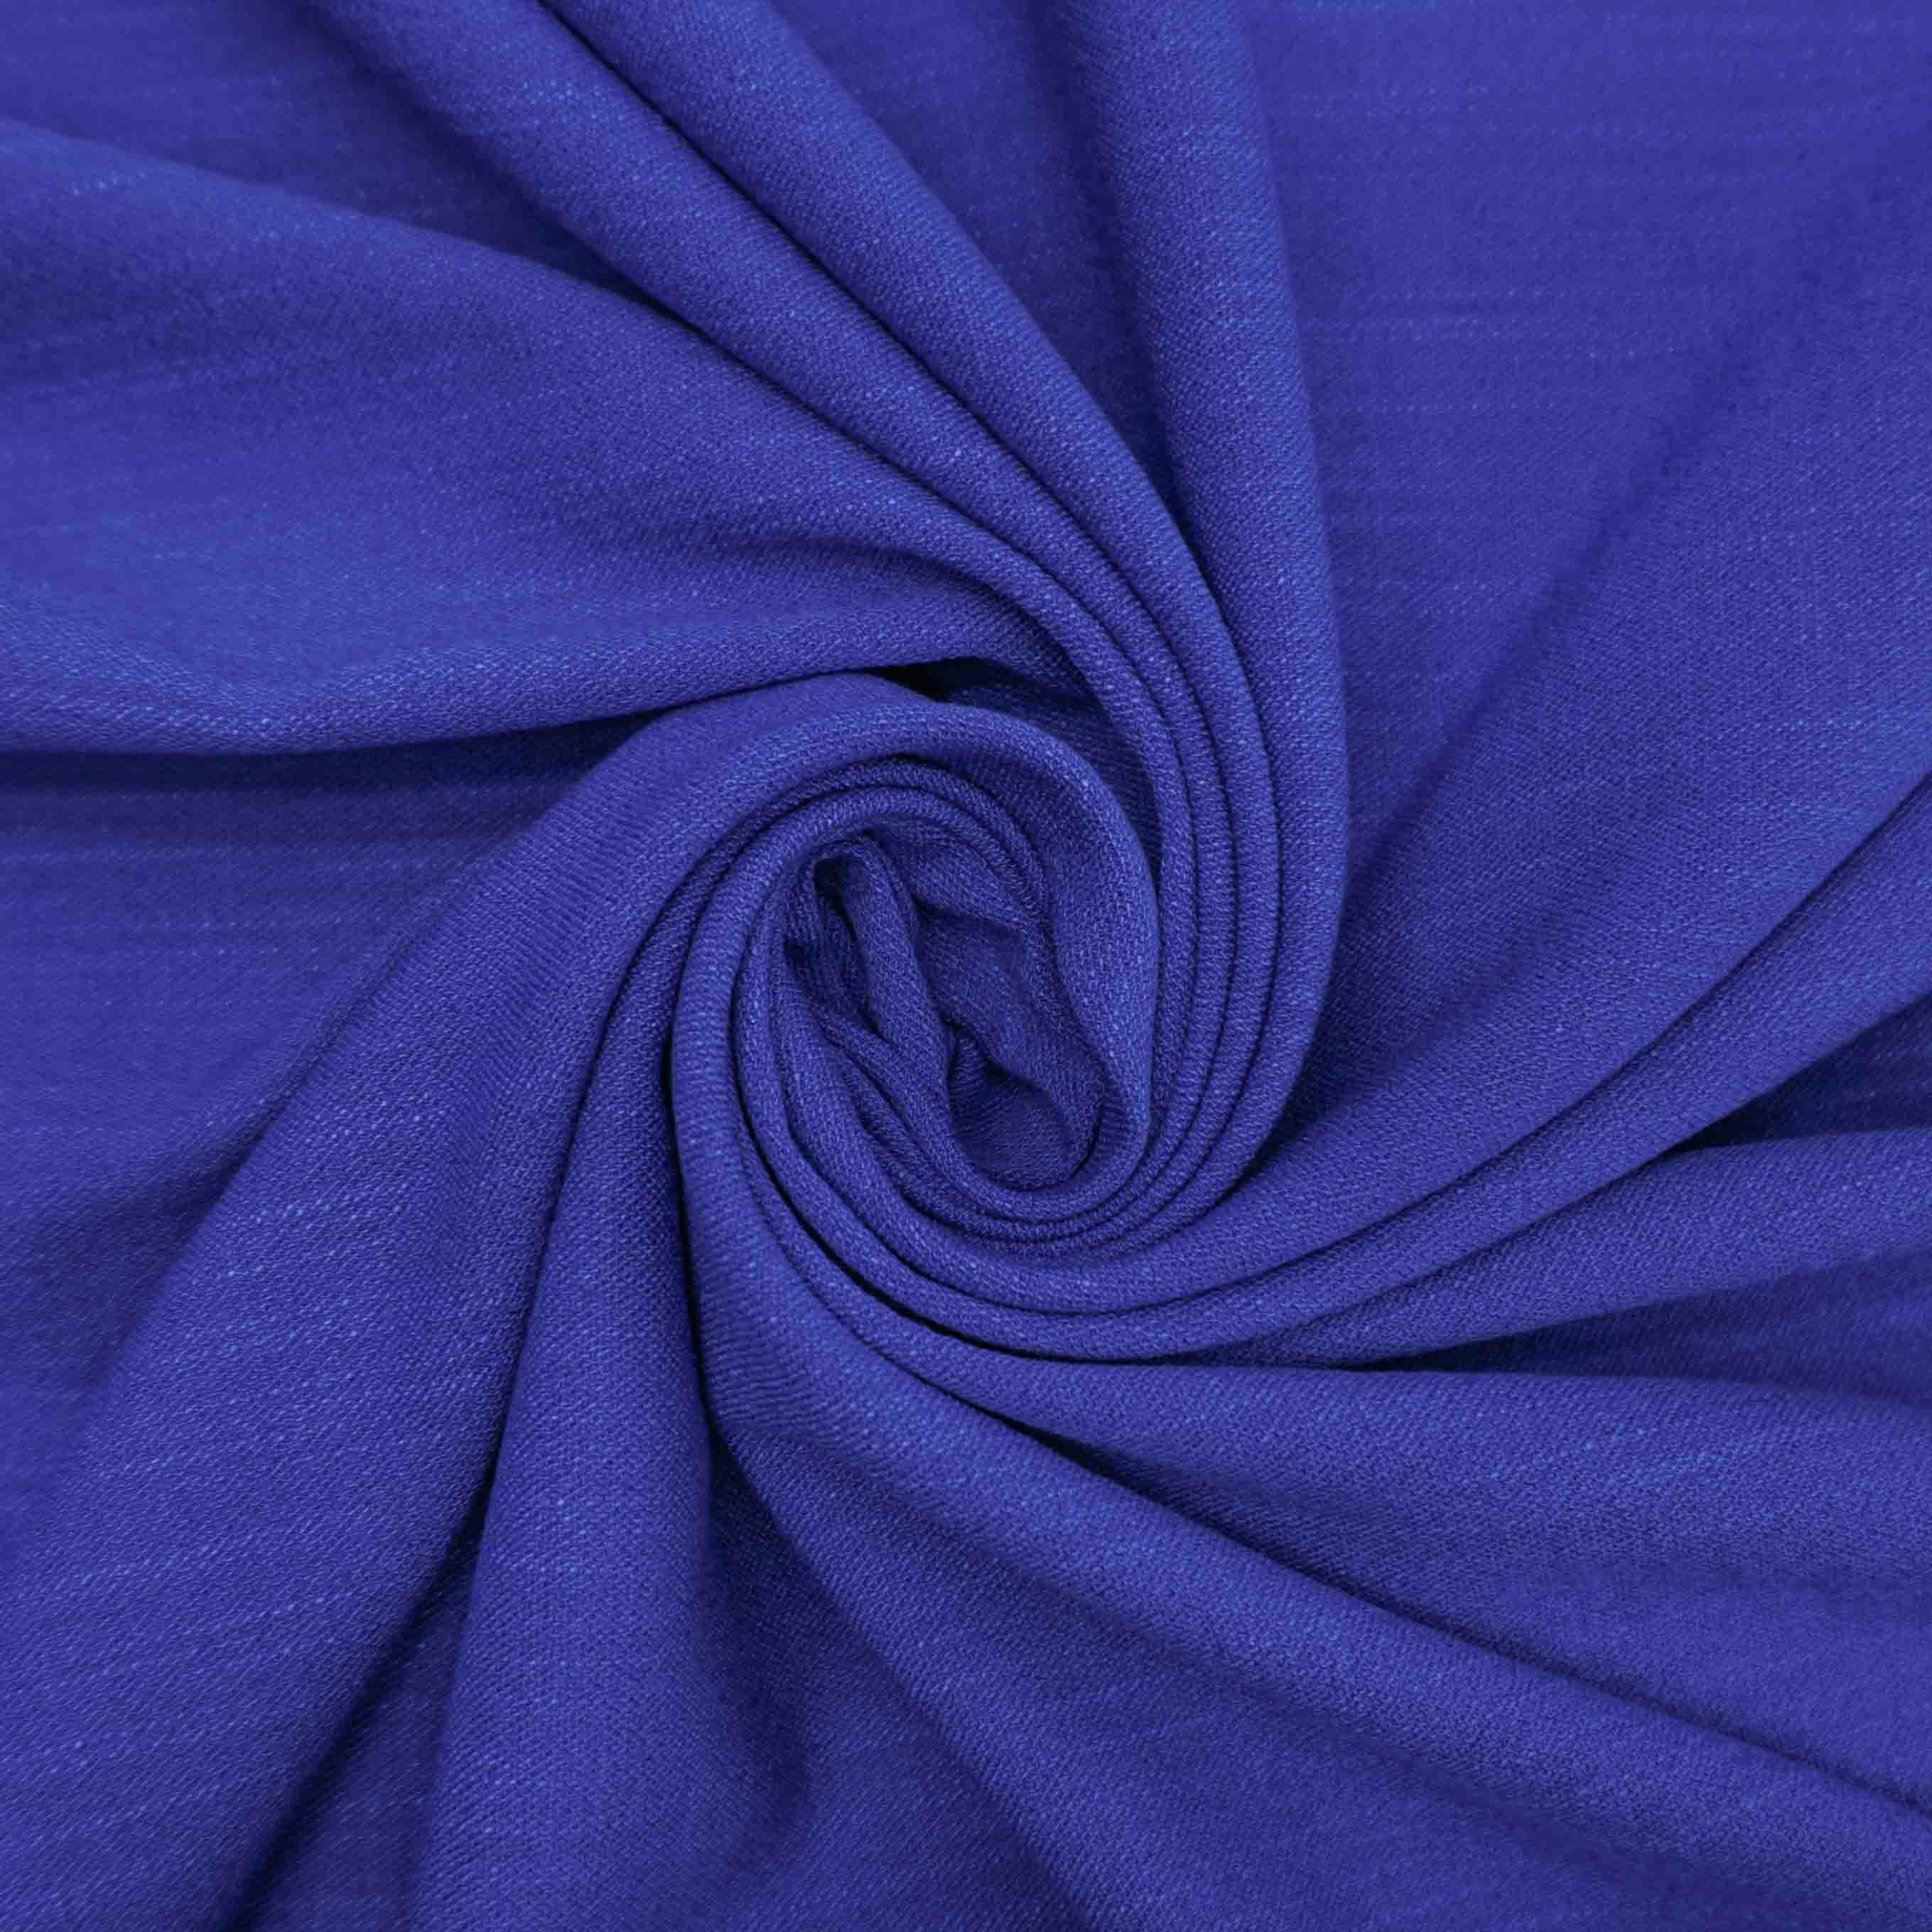 Tecido alfaiataria textura de linho com elastano azul royal